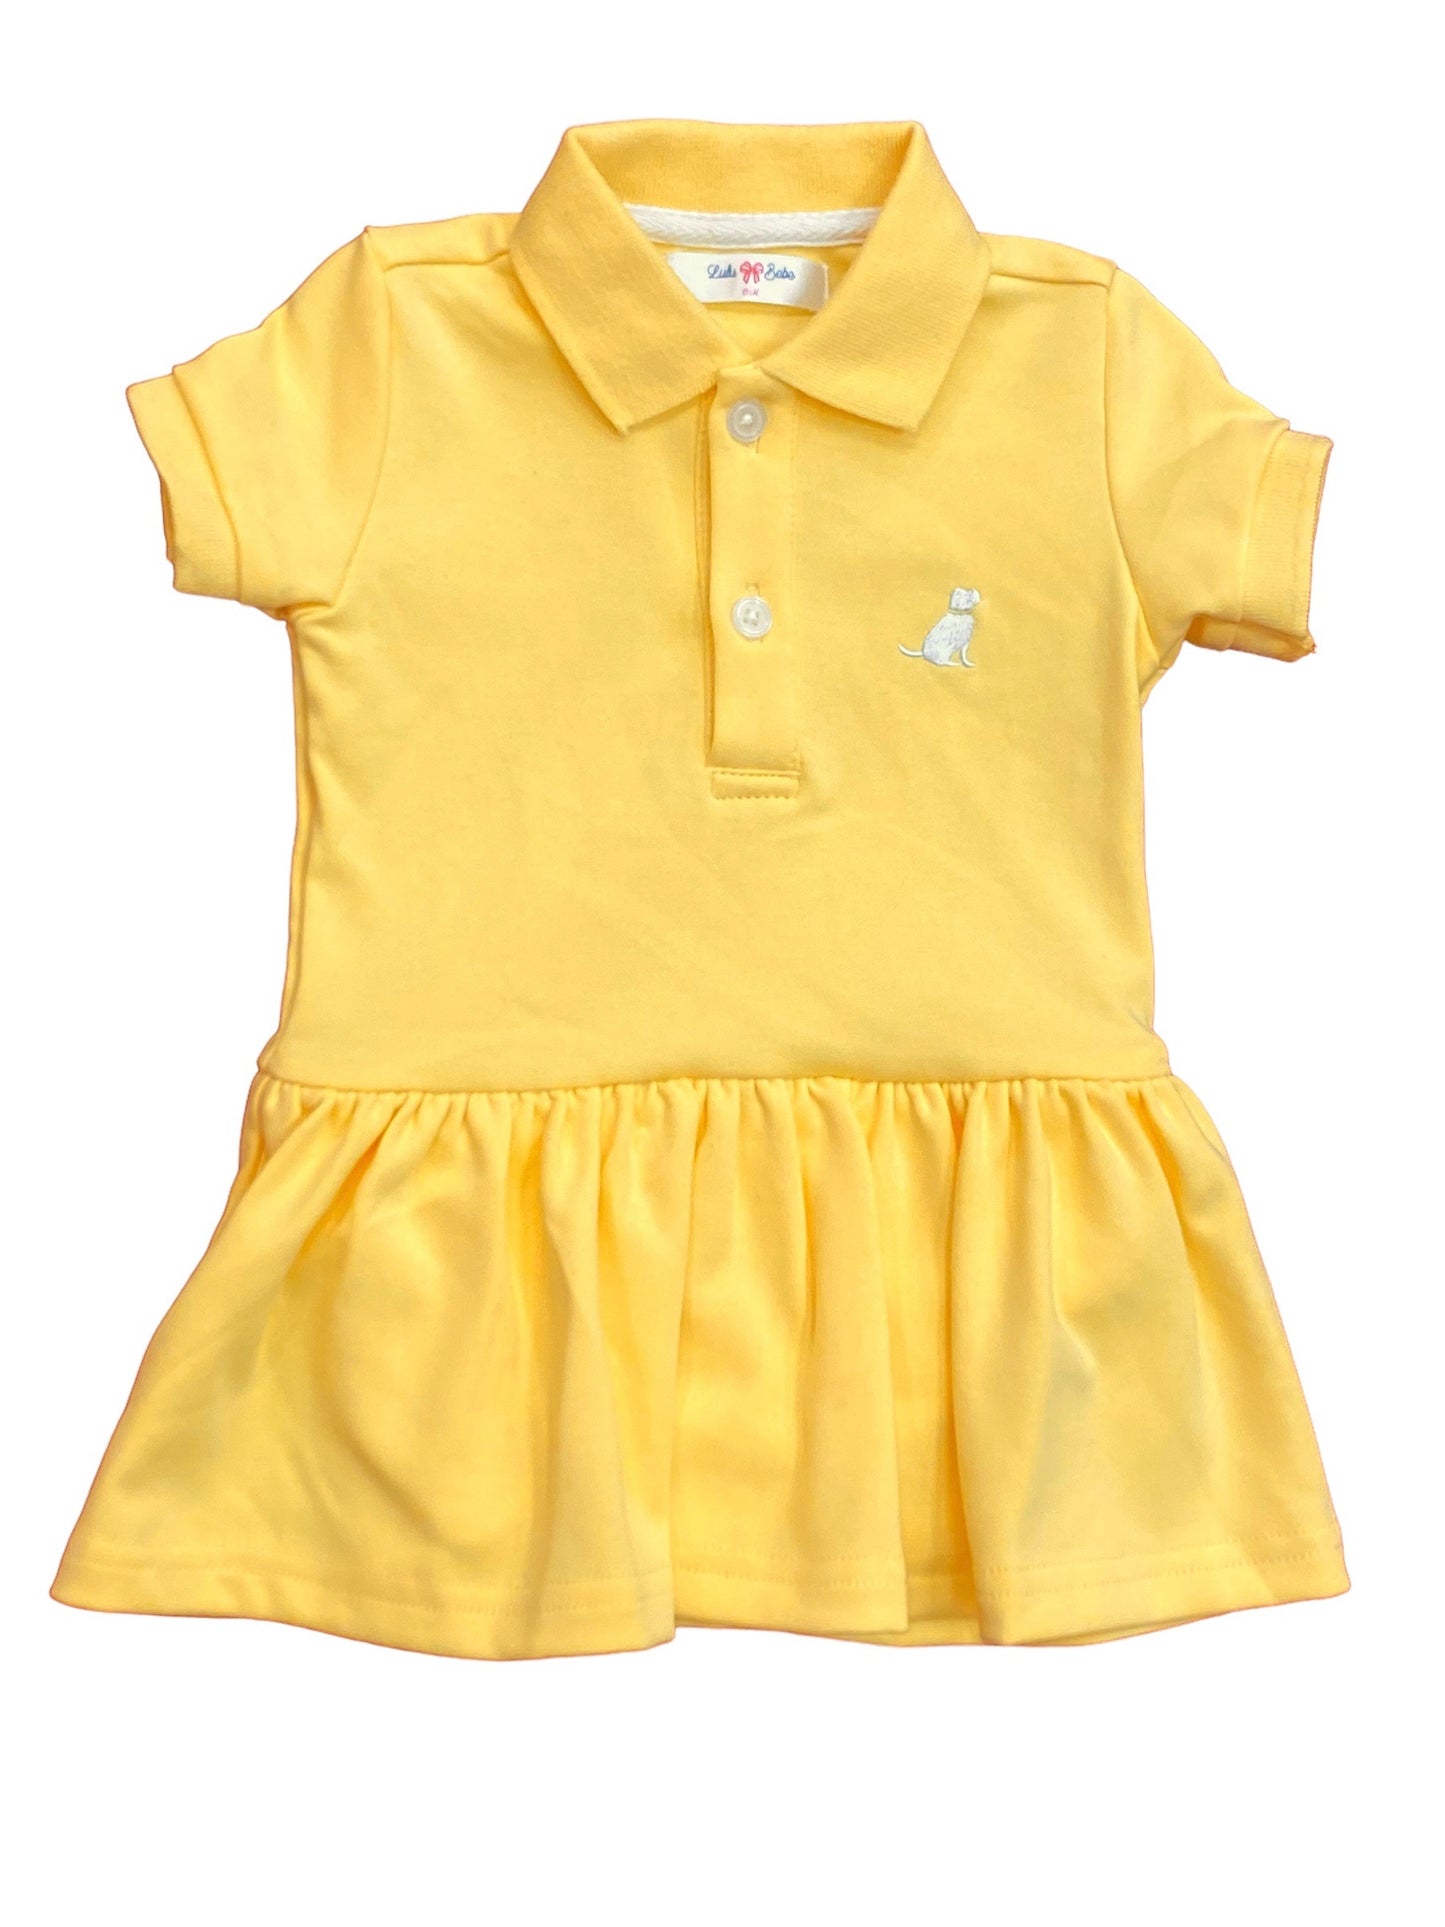 LB Kids Ashley Yellow Polo Dress